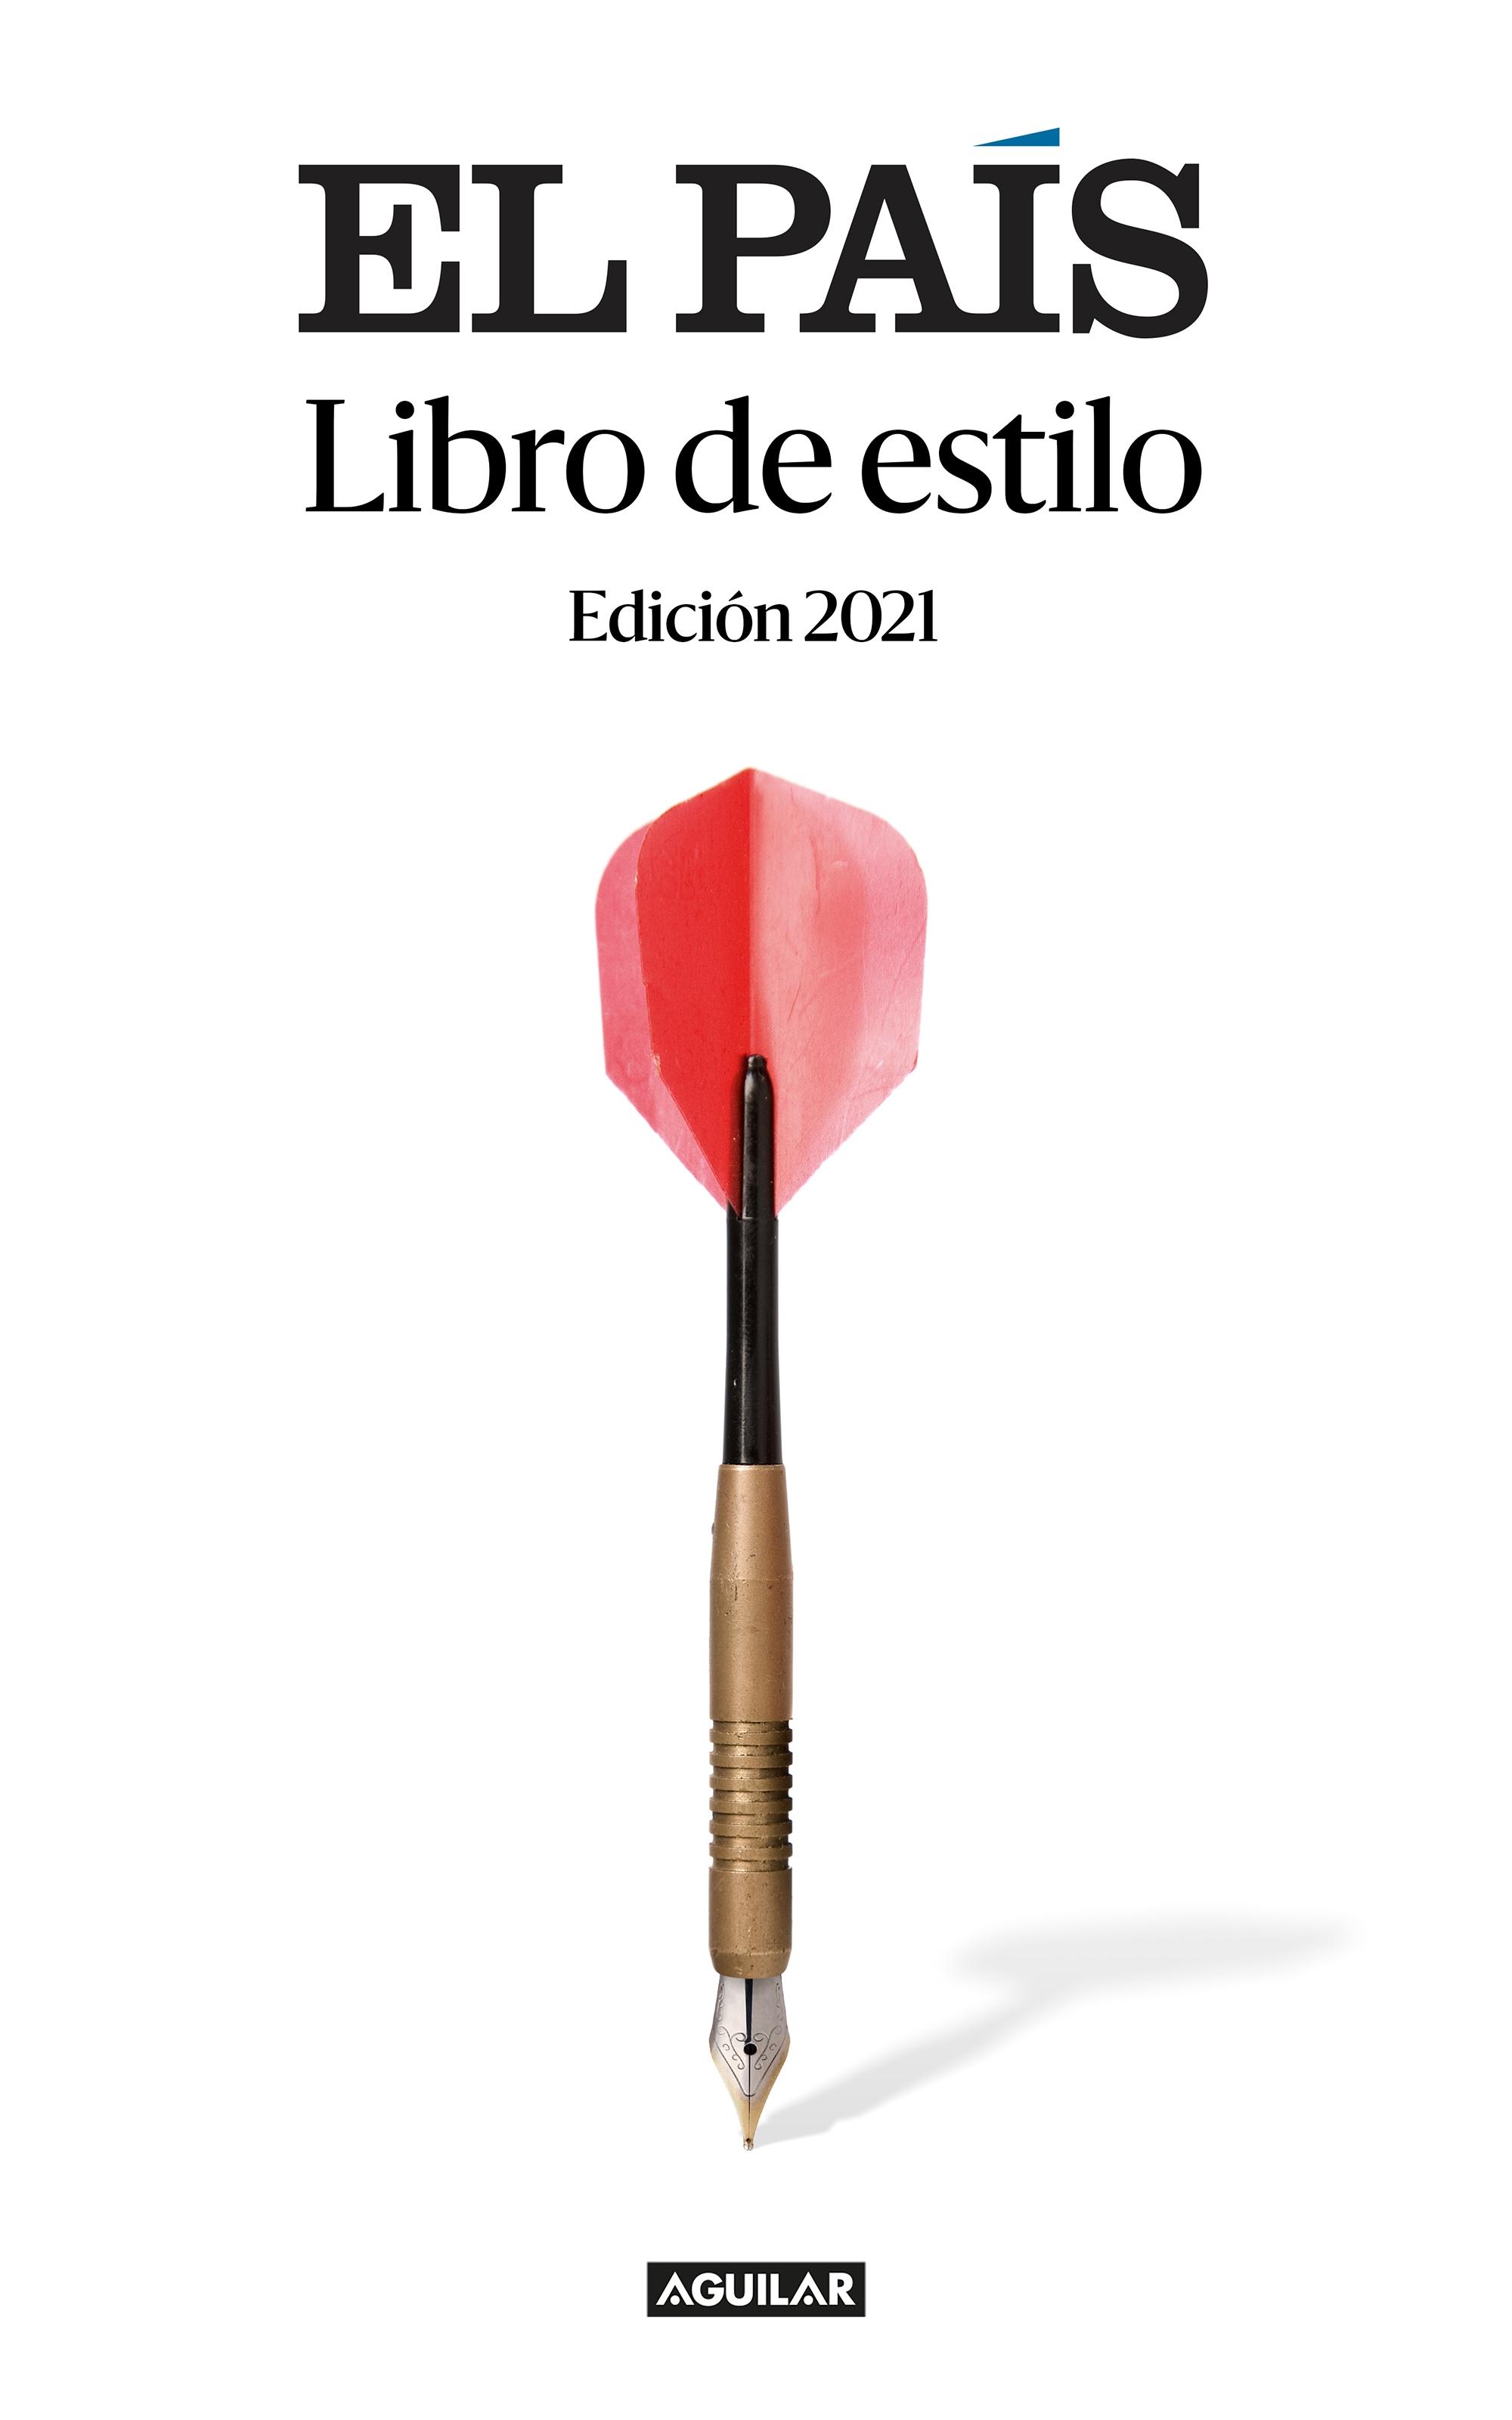 Libro de estilo El País "Una herramienta útil para los lectores; un manual imprescindible para pe". 